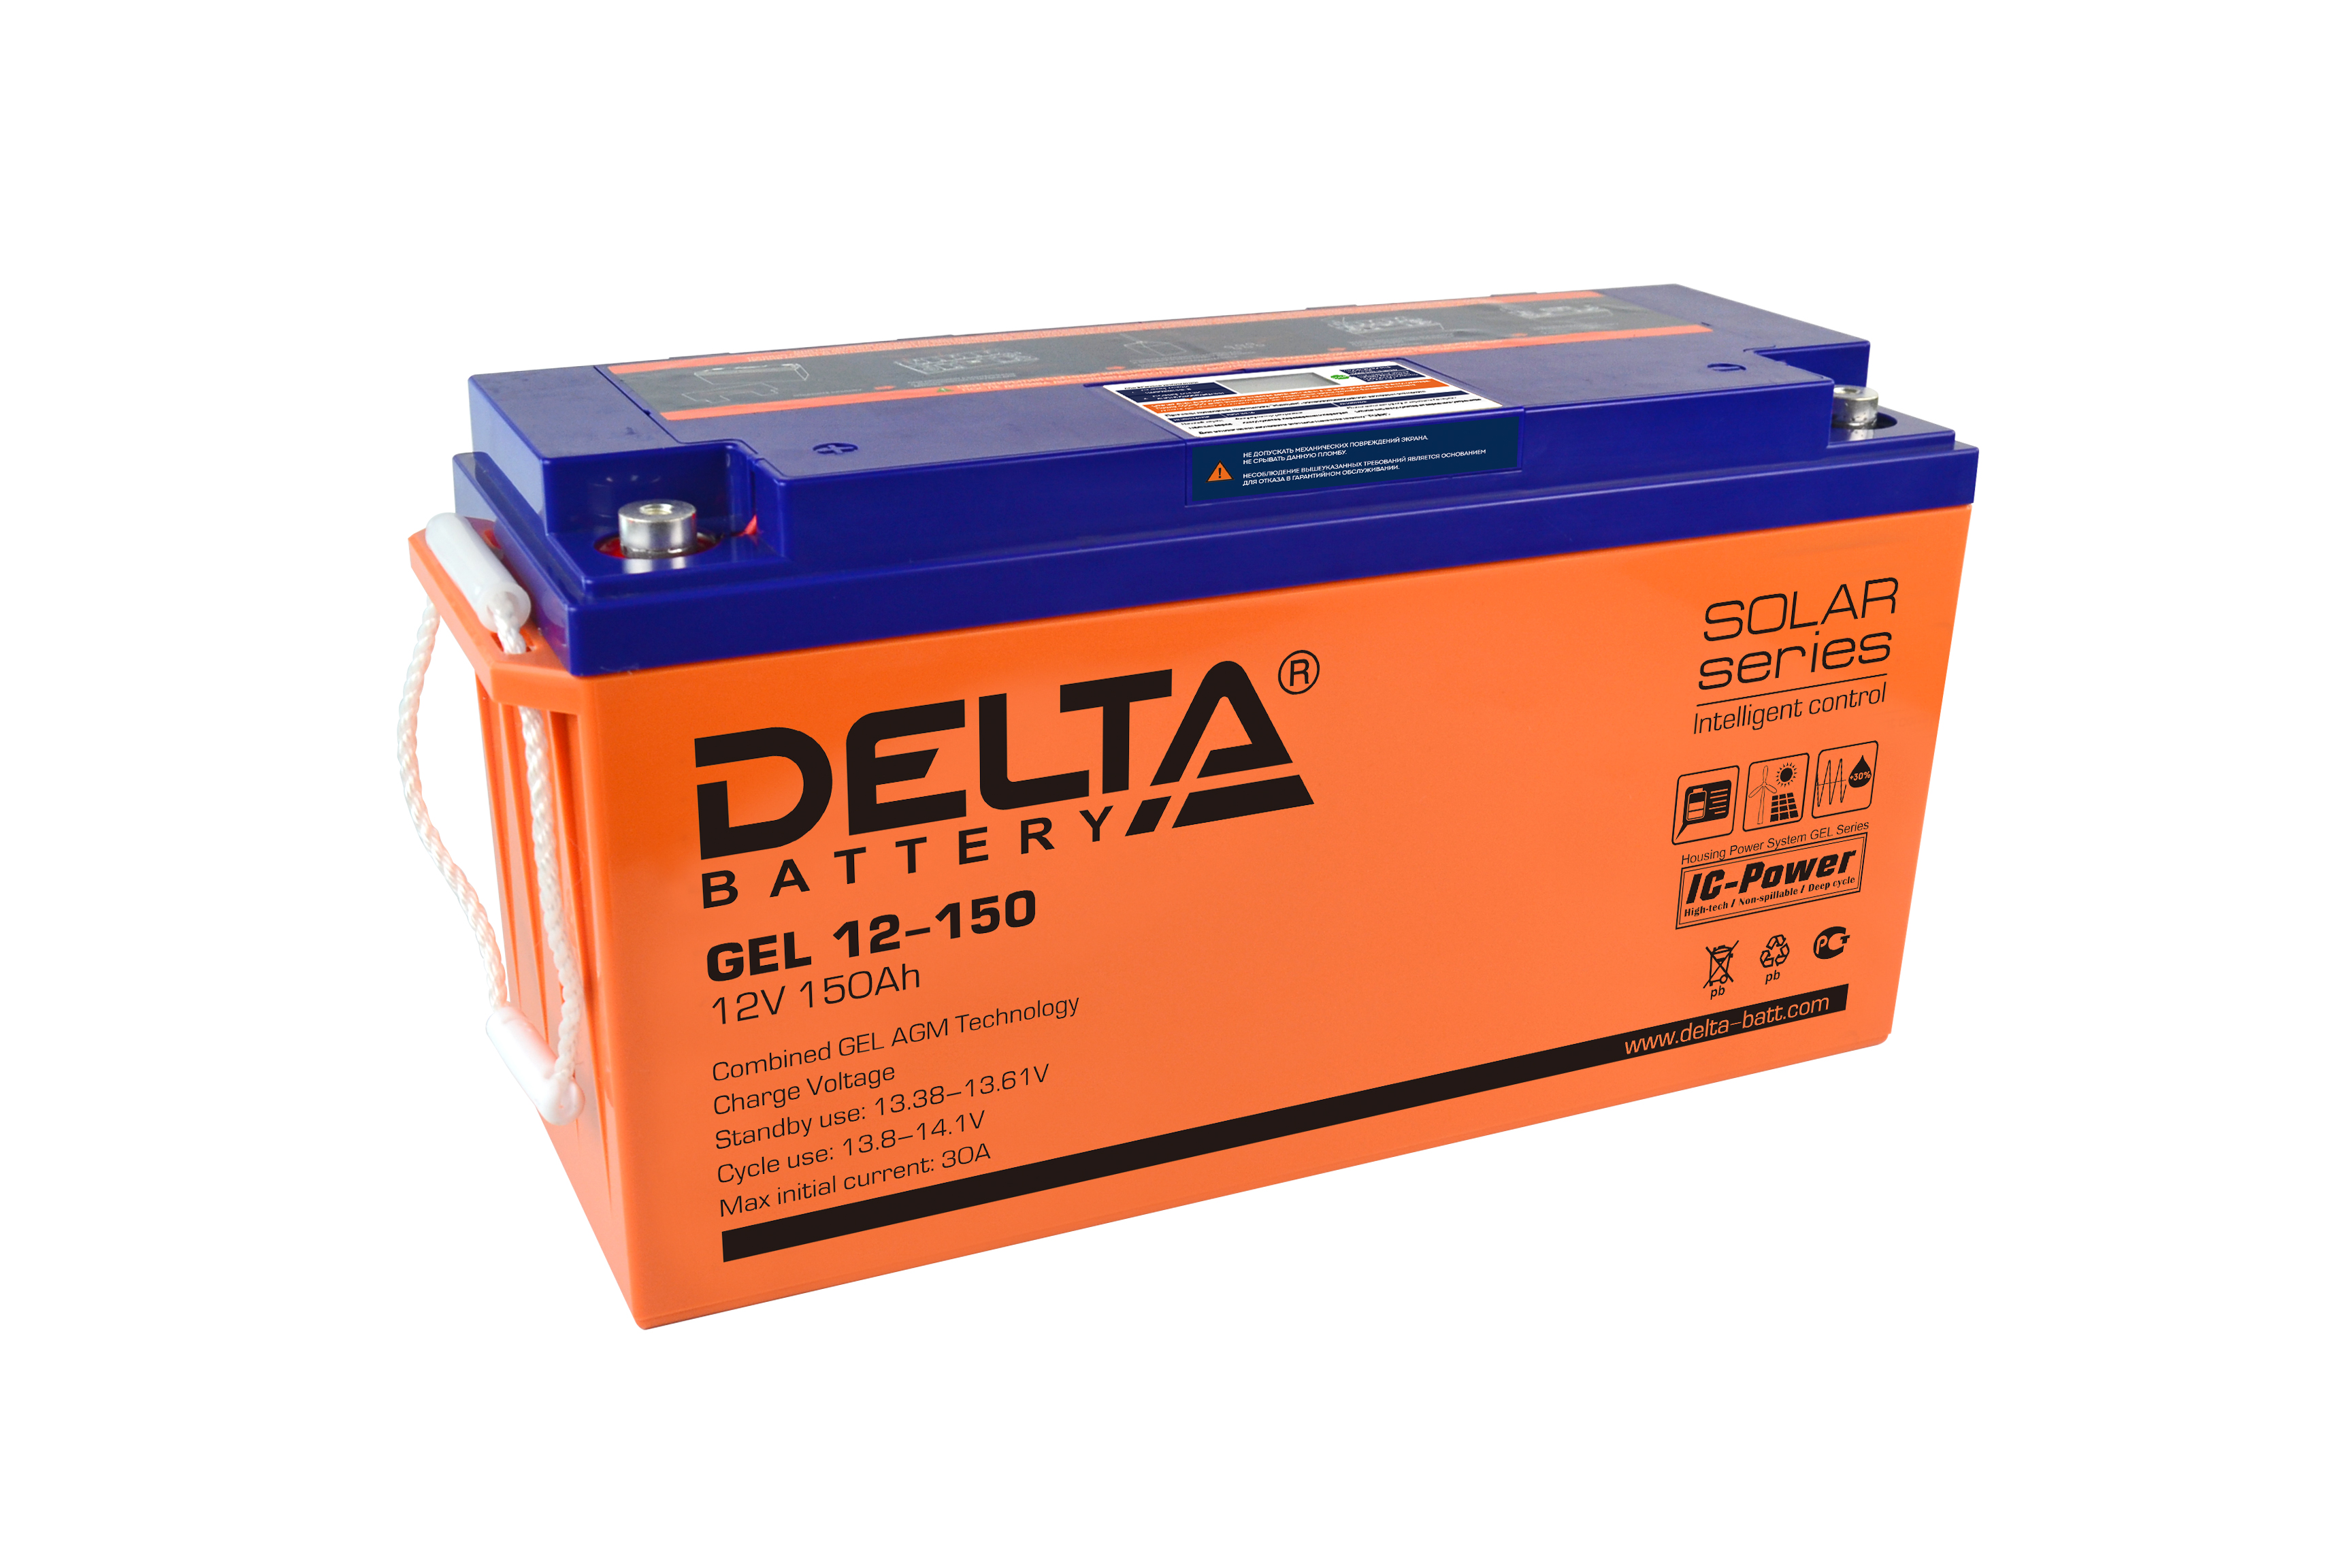 Как зарядить аккумулятор delta